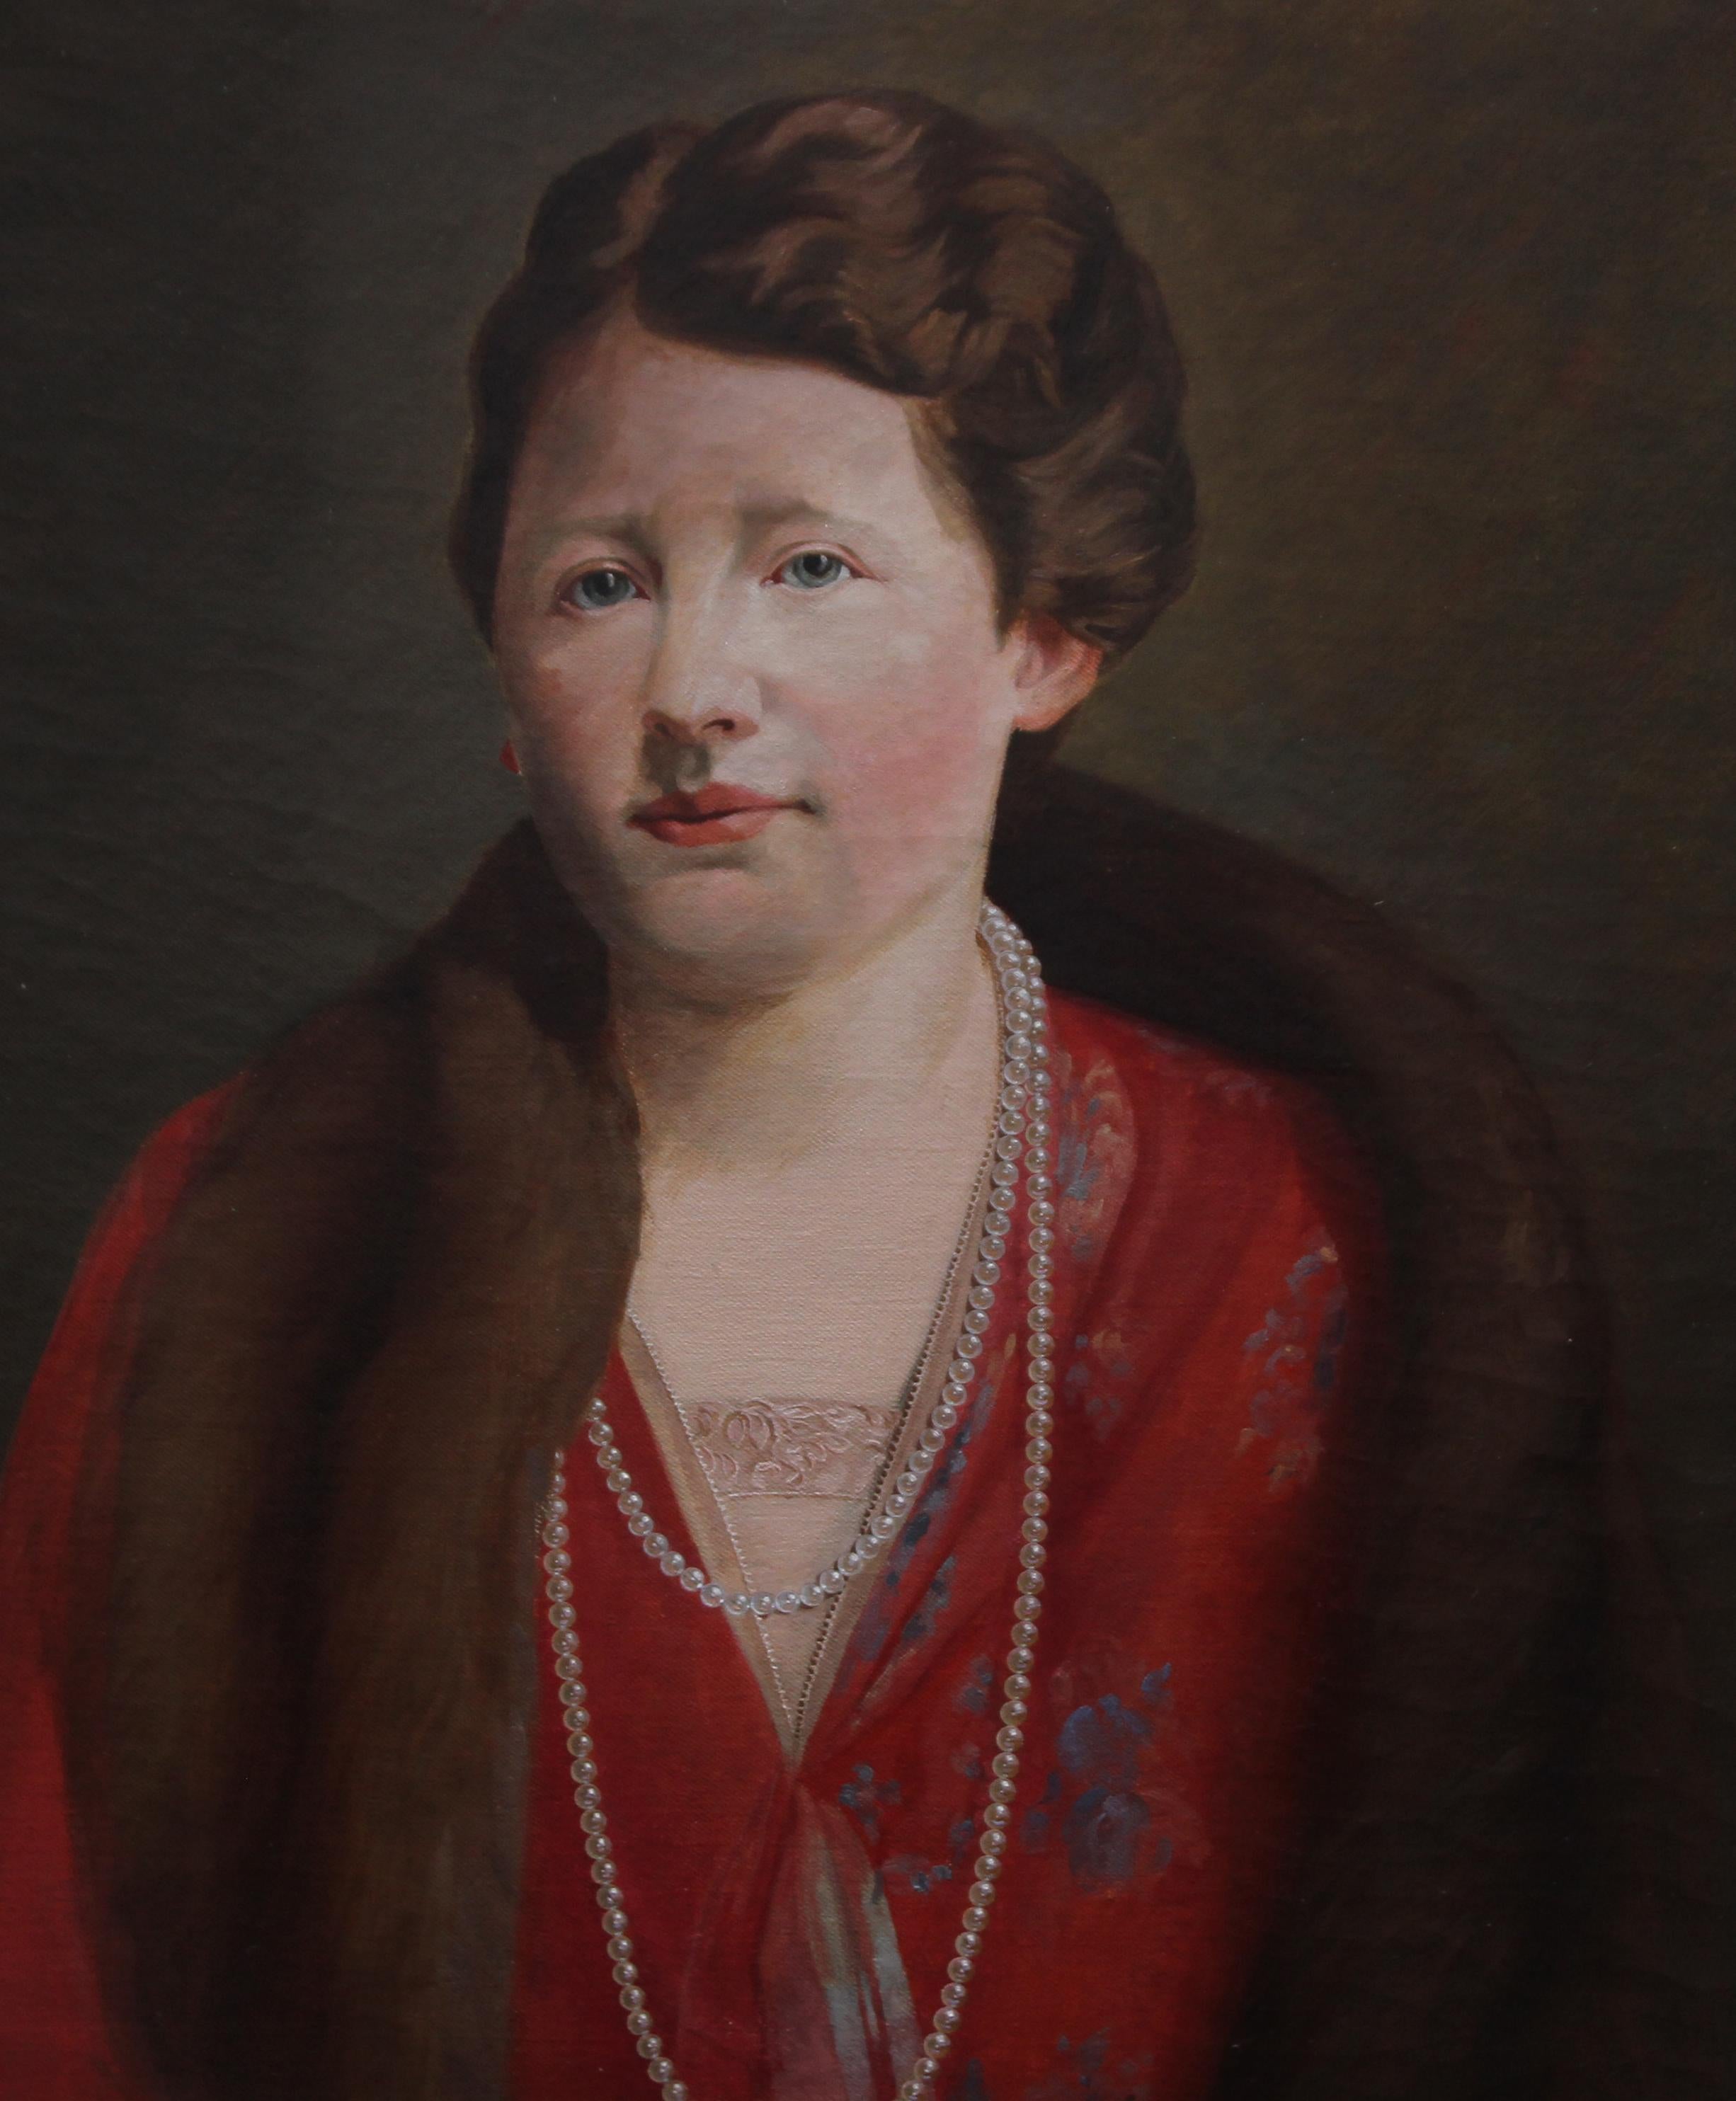 Dieses schöne britische Porträt-Ölgemälde im Art-déco-Stil stammt von dem bekannten Künstler James Robert Granville Exley und ist durch familiäre Abstammung belegt. Bei der Dargestellten handelt es sich um Elizabeth Exley, möglicherweise seine Frau.